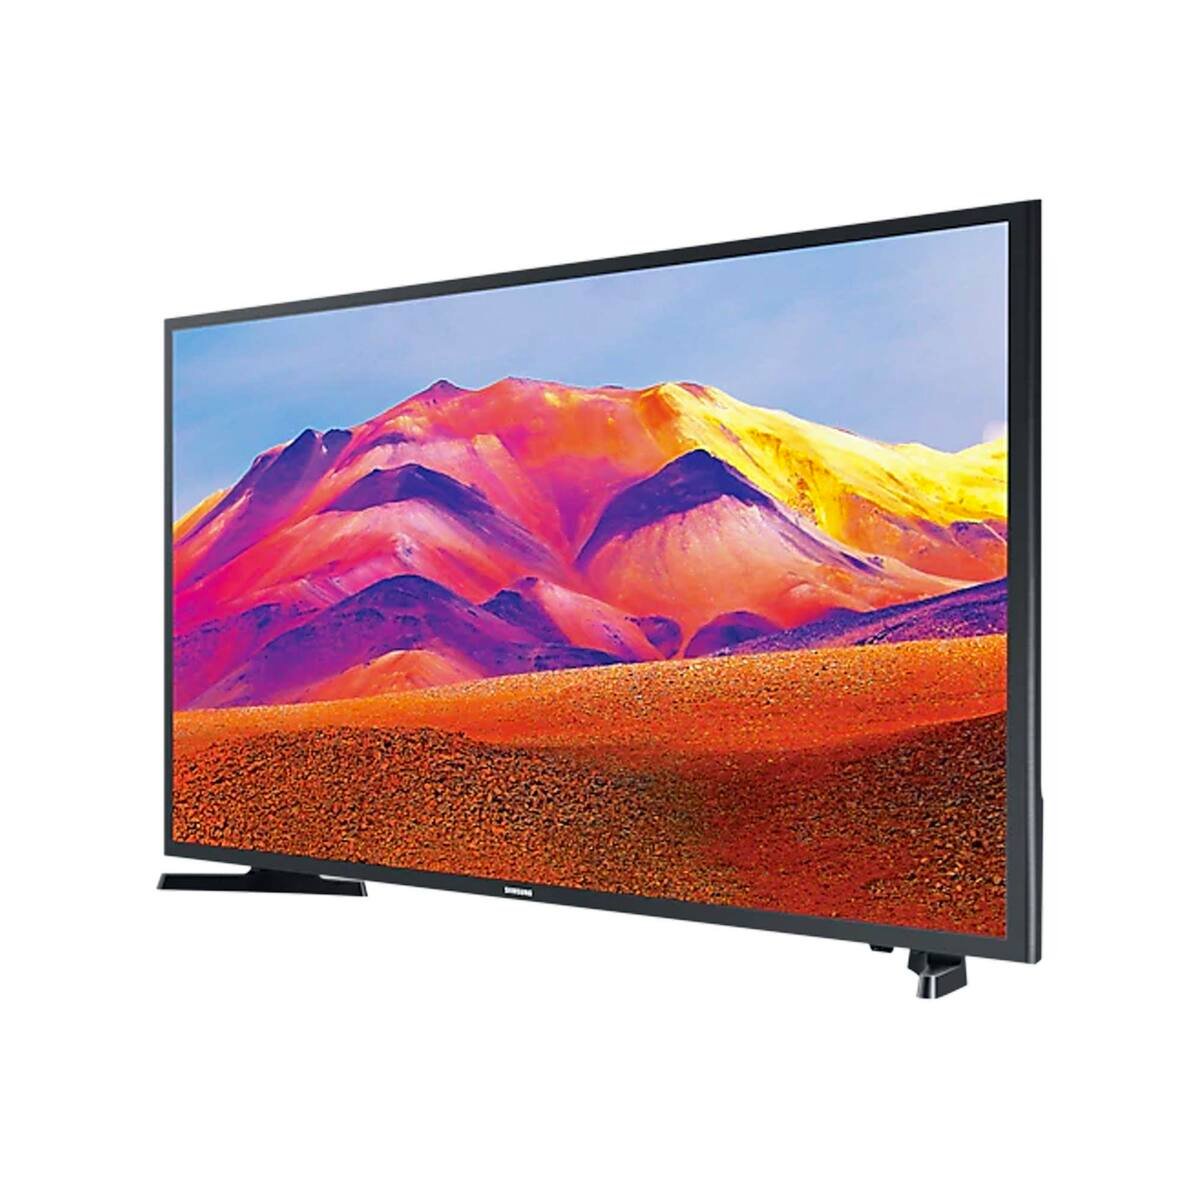 Samsung Smart LED TV 40 inch UA40T5300